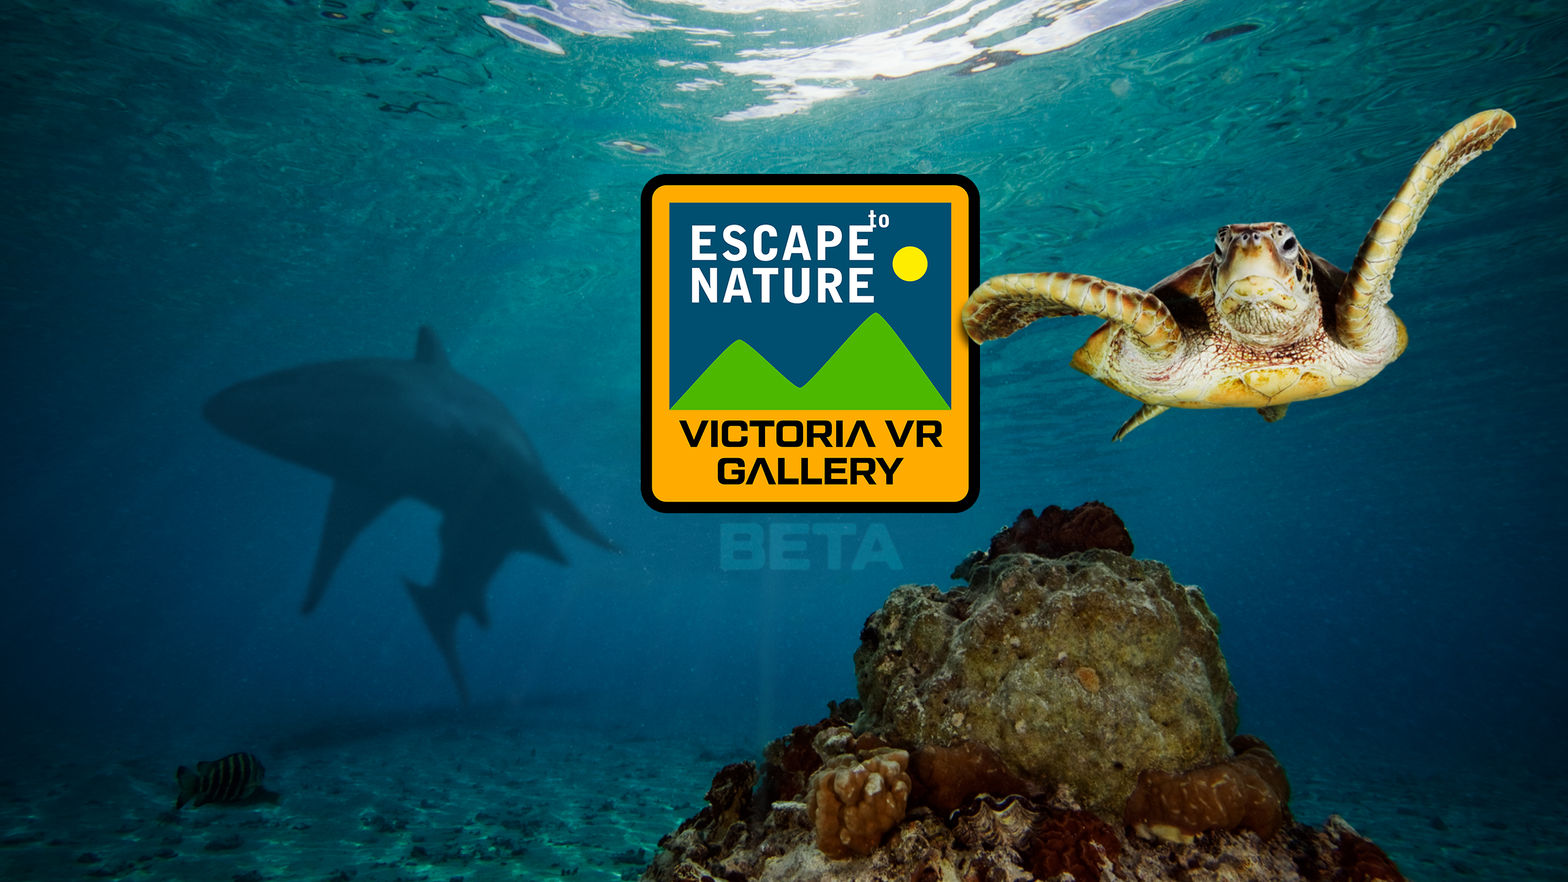 Victoria VR - ESCAPE to Nature GALLERY